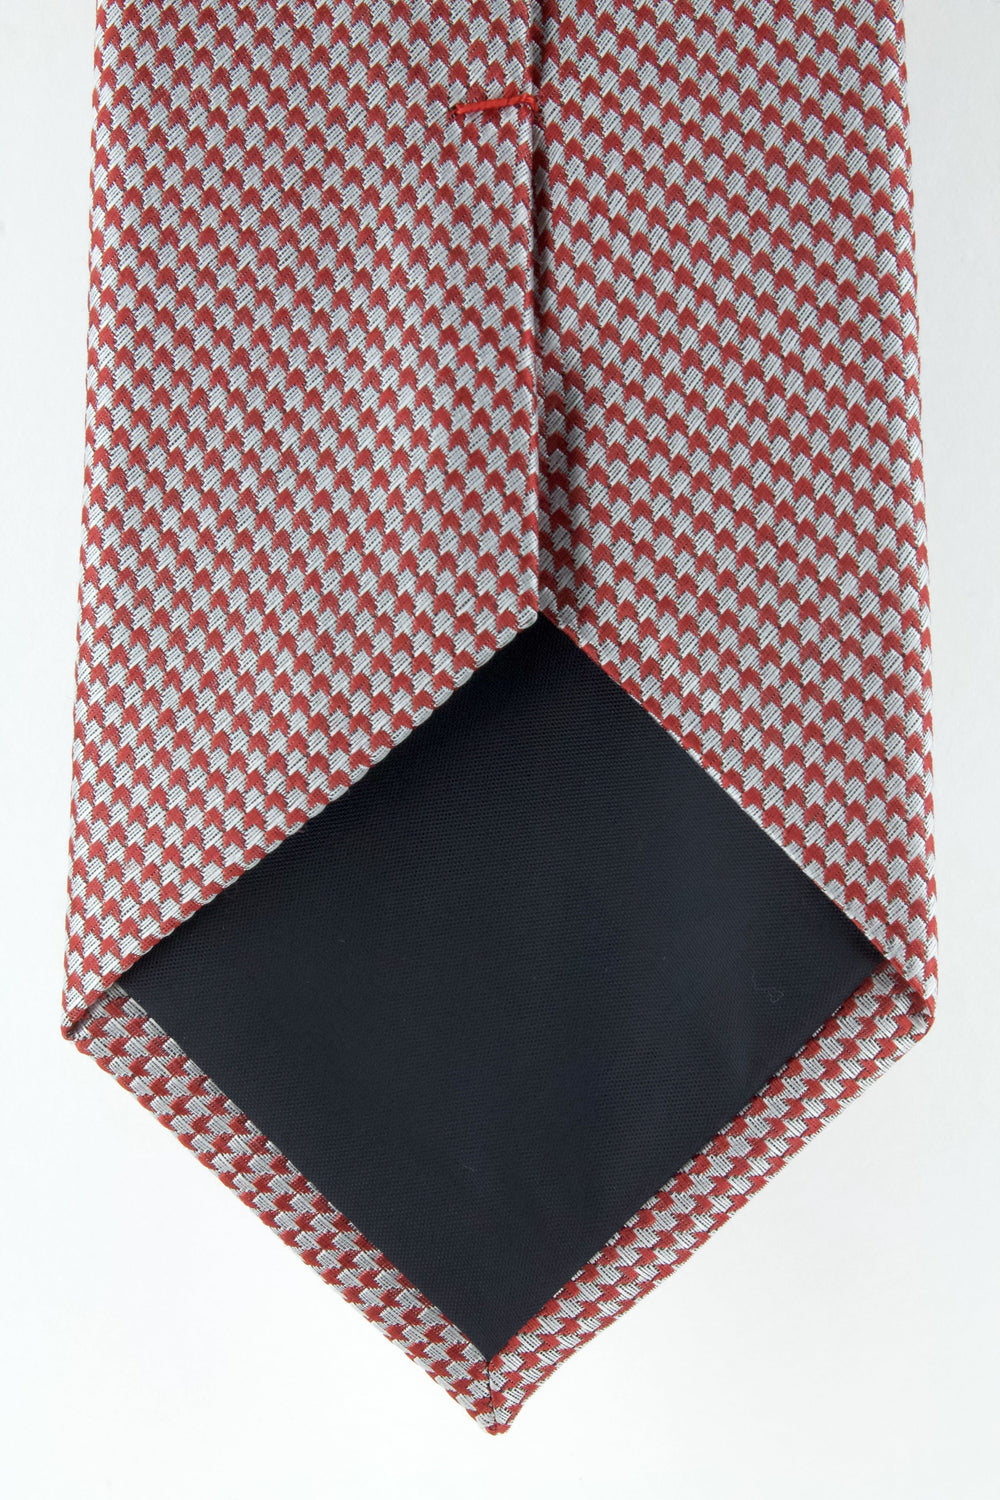 Cravate en soie tissée motif flèche rouge